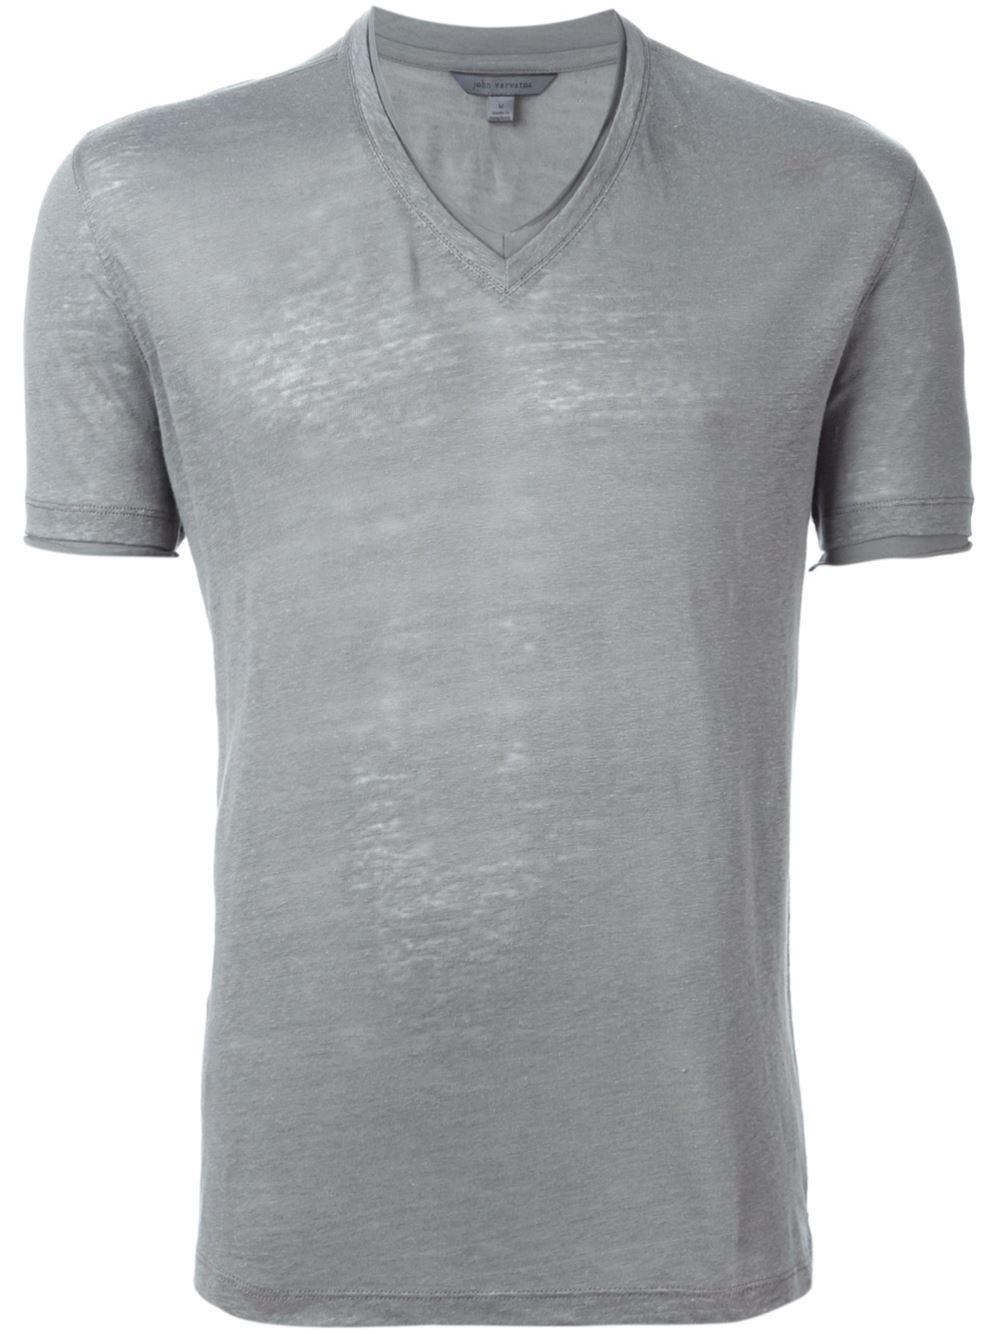 Lyst - John Varvatos V-neck T-shirt in Gray for Men